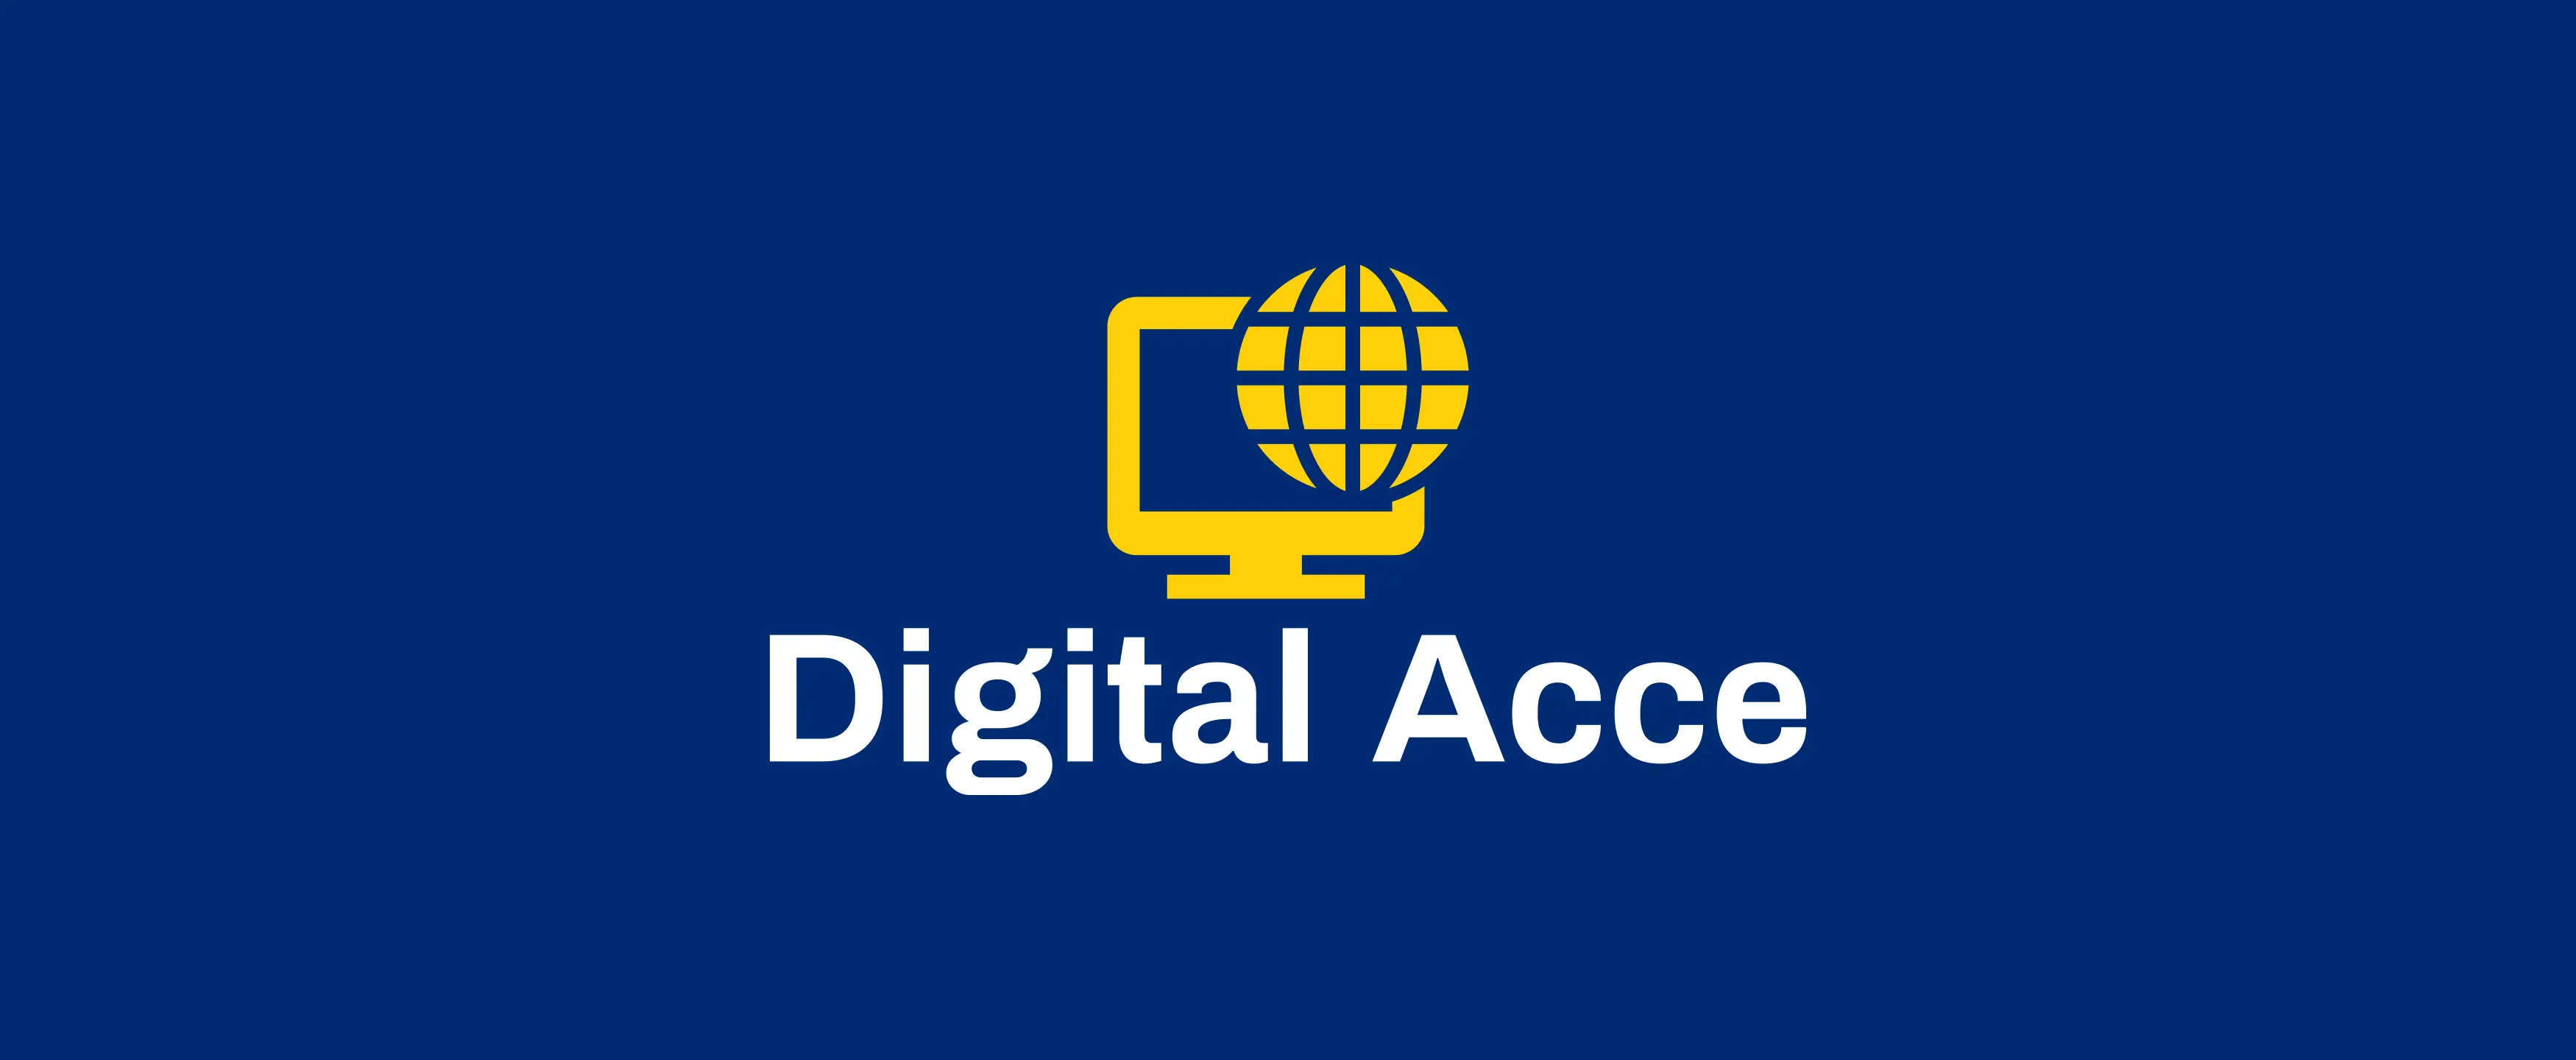 Digital Acce Logo